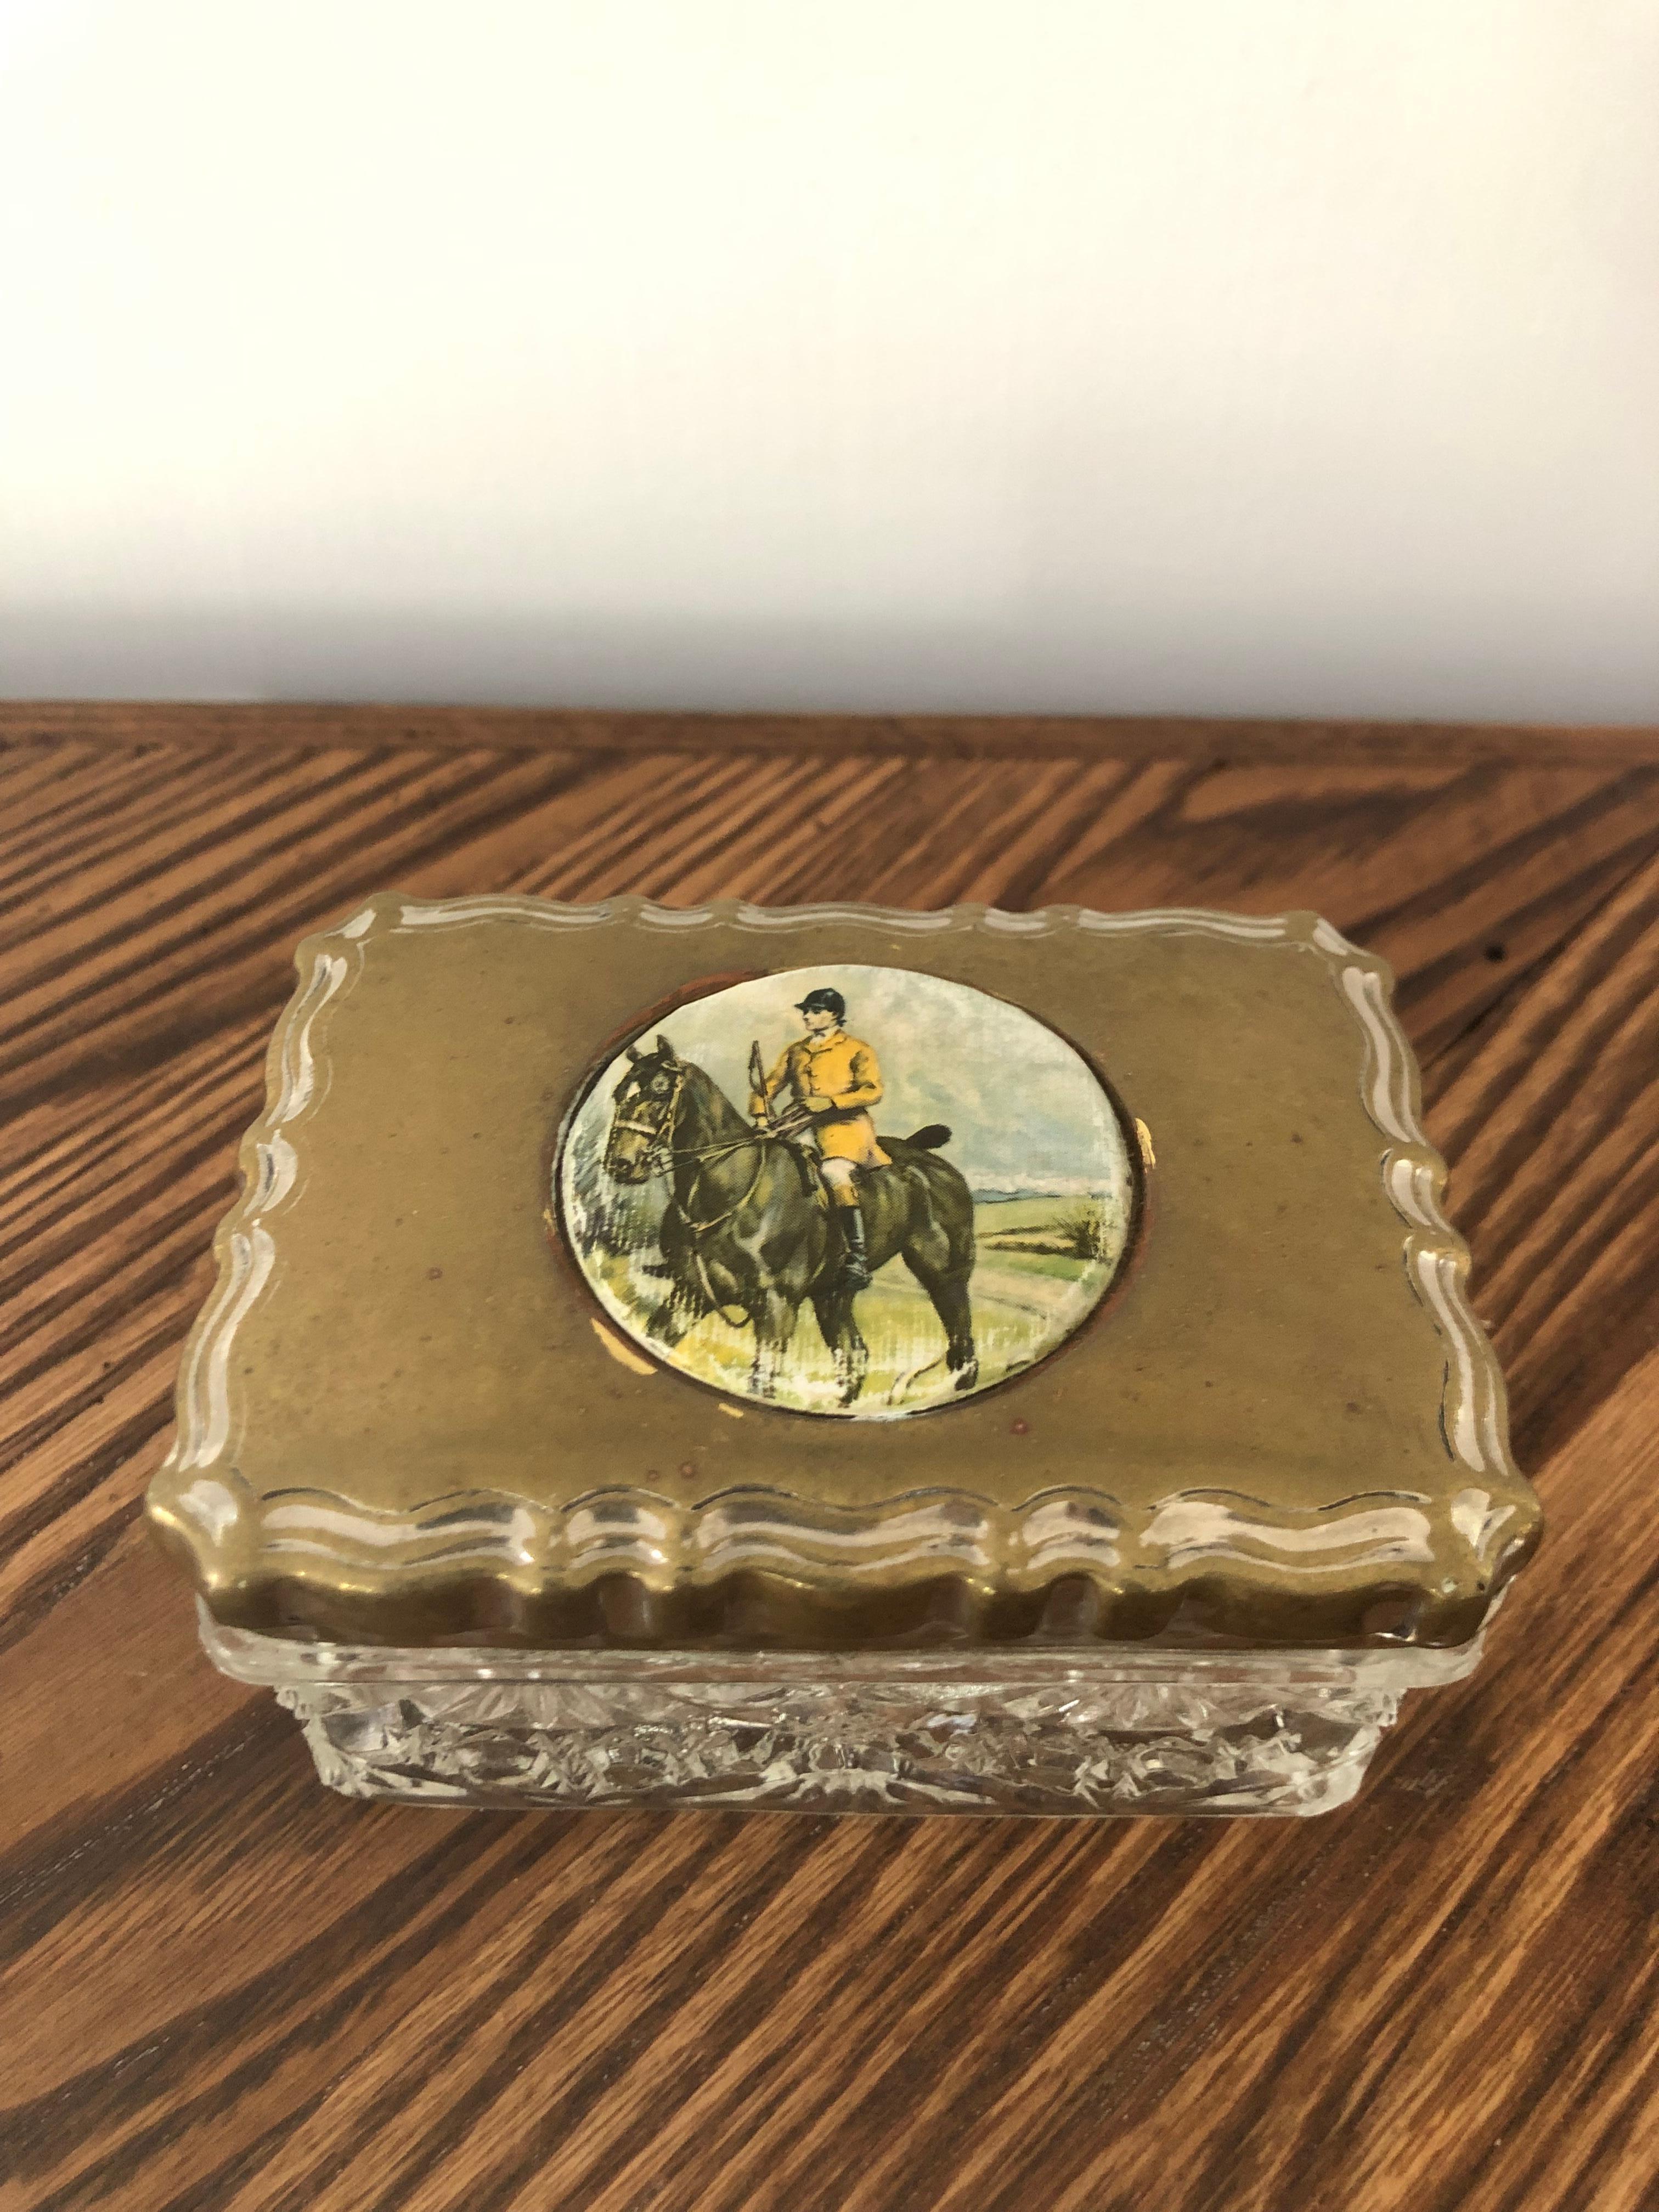 Boîte à vaisselle en cristal du début du XXe siècle avec une scène de chasse peinte sur un couvercle en laiton. Cette boîte en cristal est d'une taille agréable et de bonne qualité. Elle serait parfaite sur n'importe quelle commode. Il provient d'un